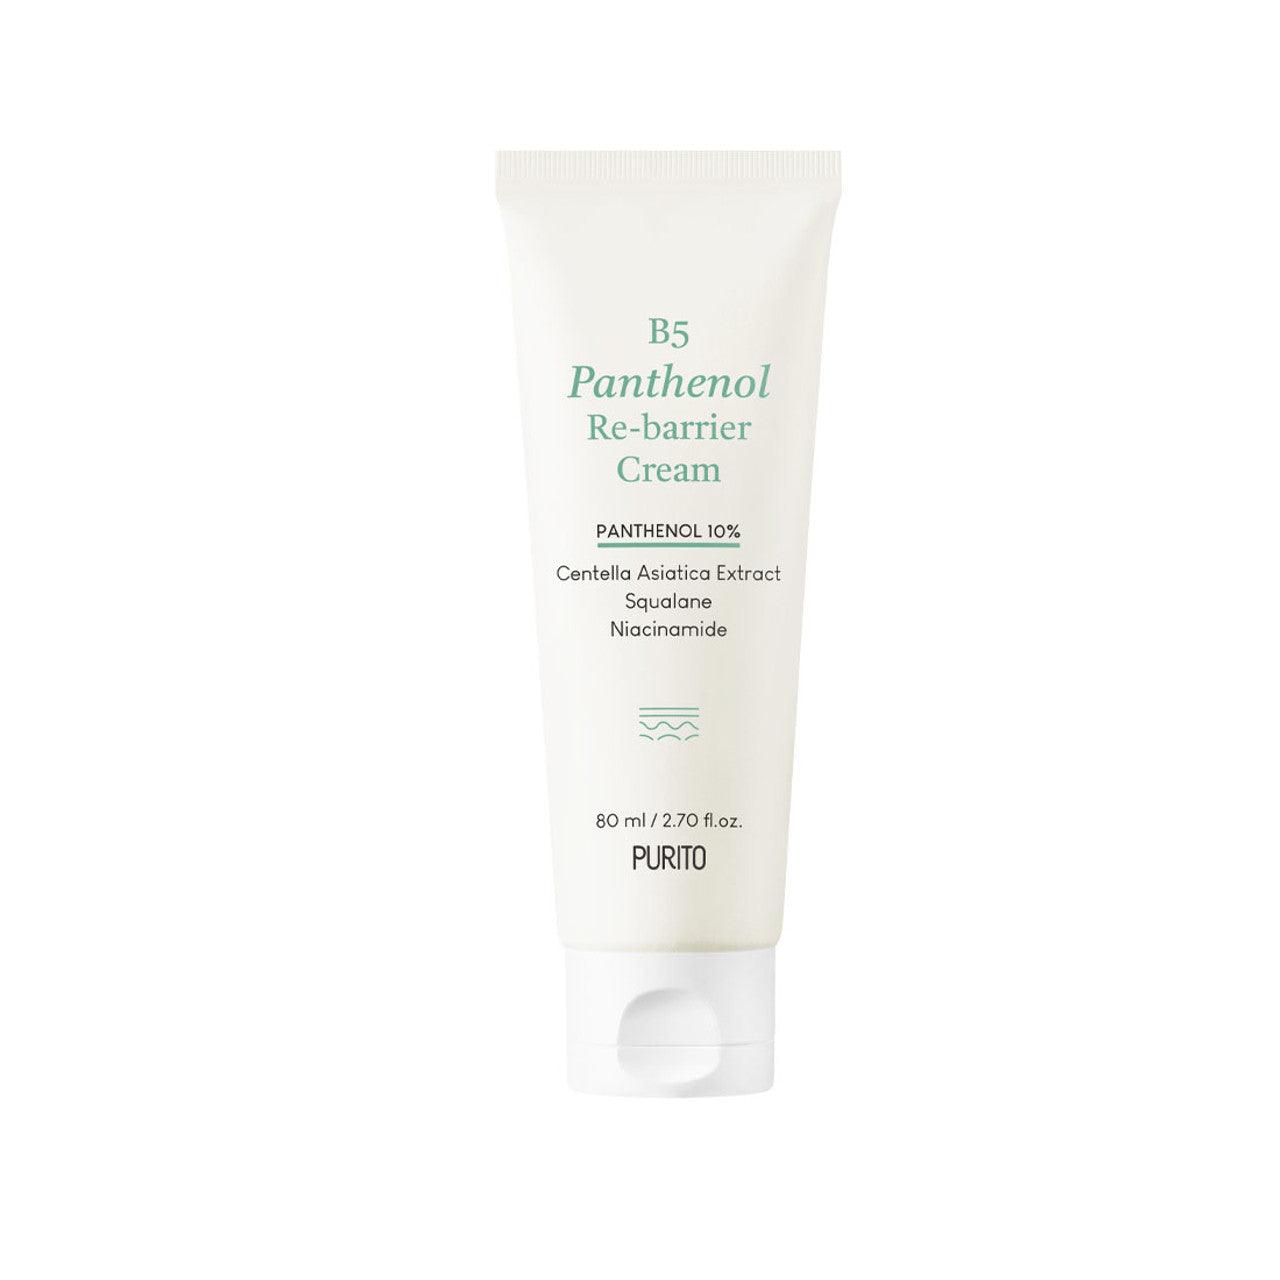 B5 Panthenol Re-Barrier Cream - 80 ml - K-Beauty Arabia